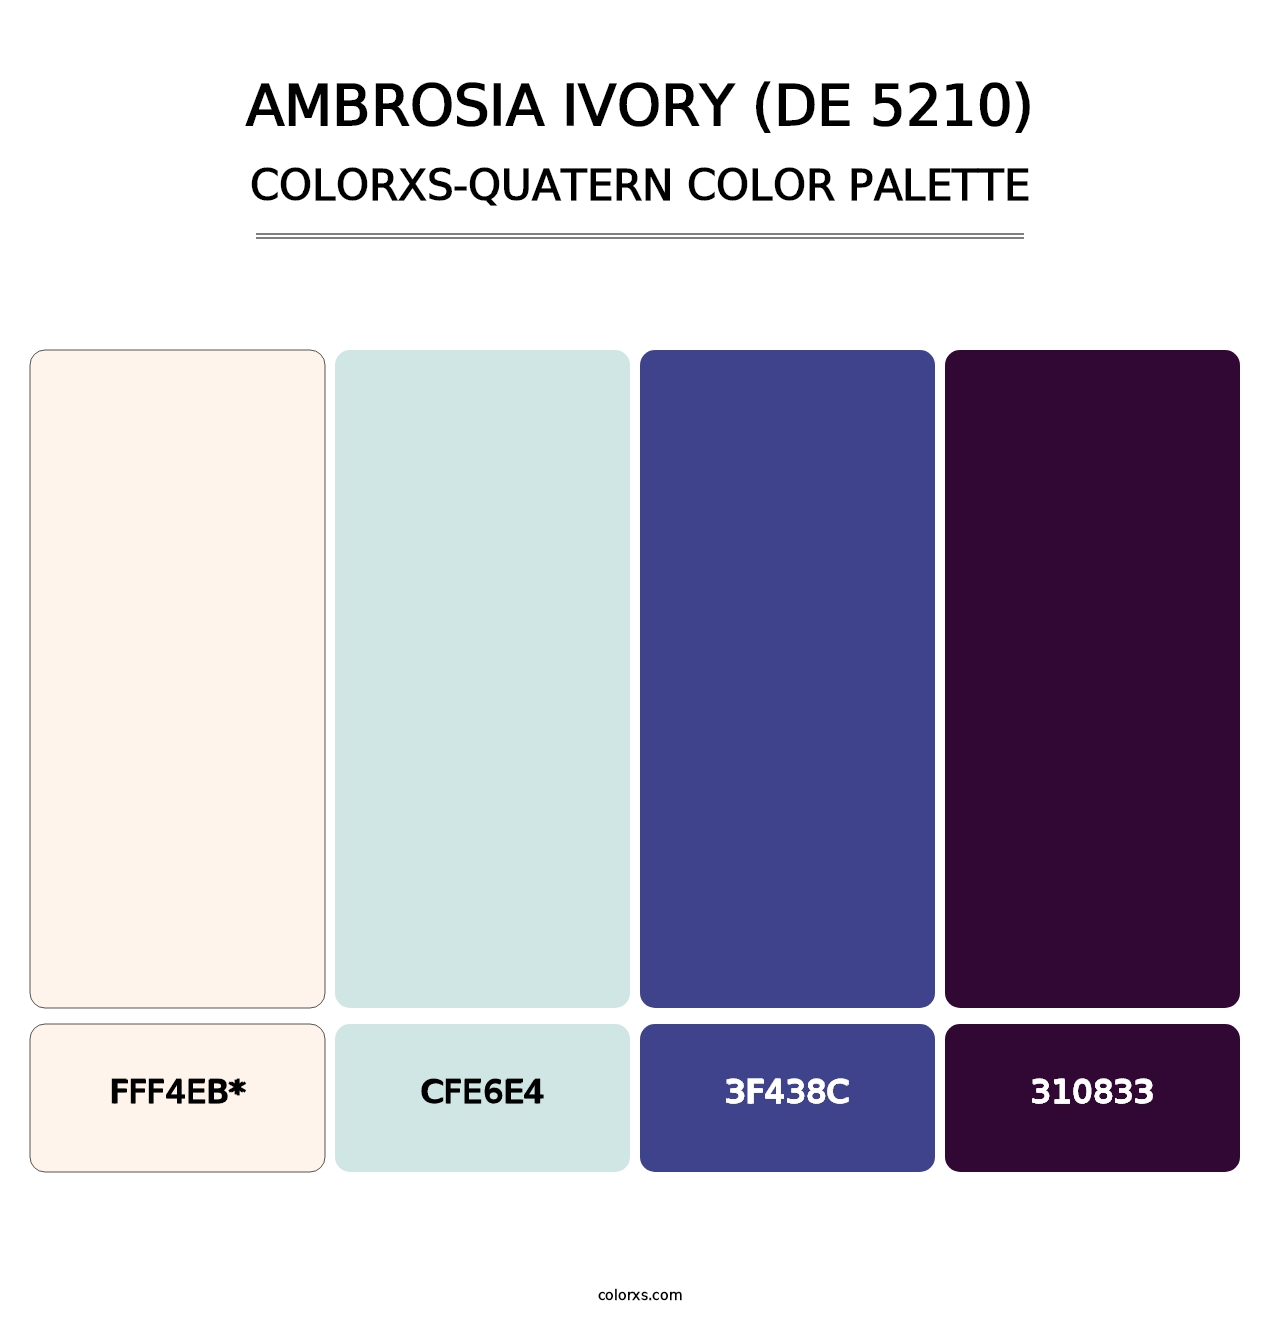 Ambrosia Ivory (DE 5210) - Colorxs Quatern Palette